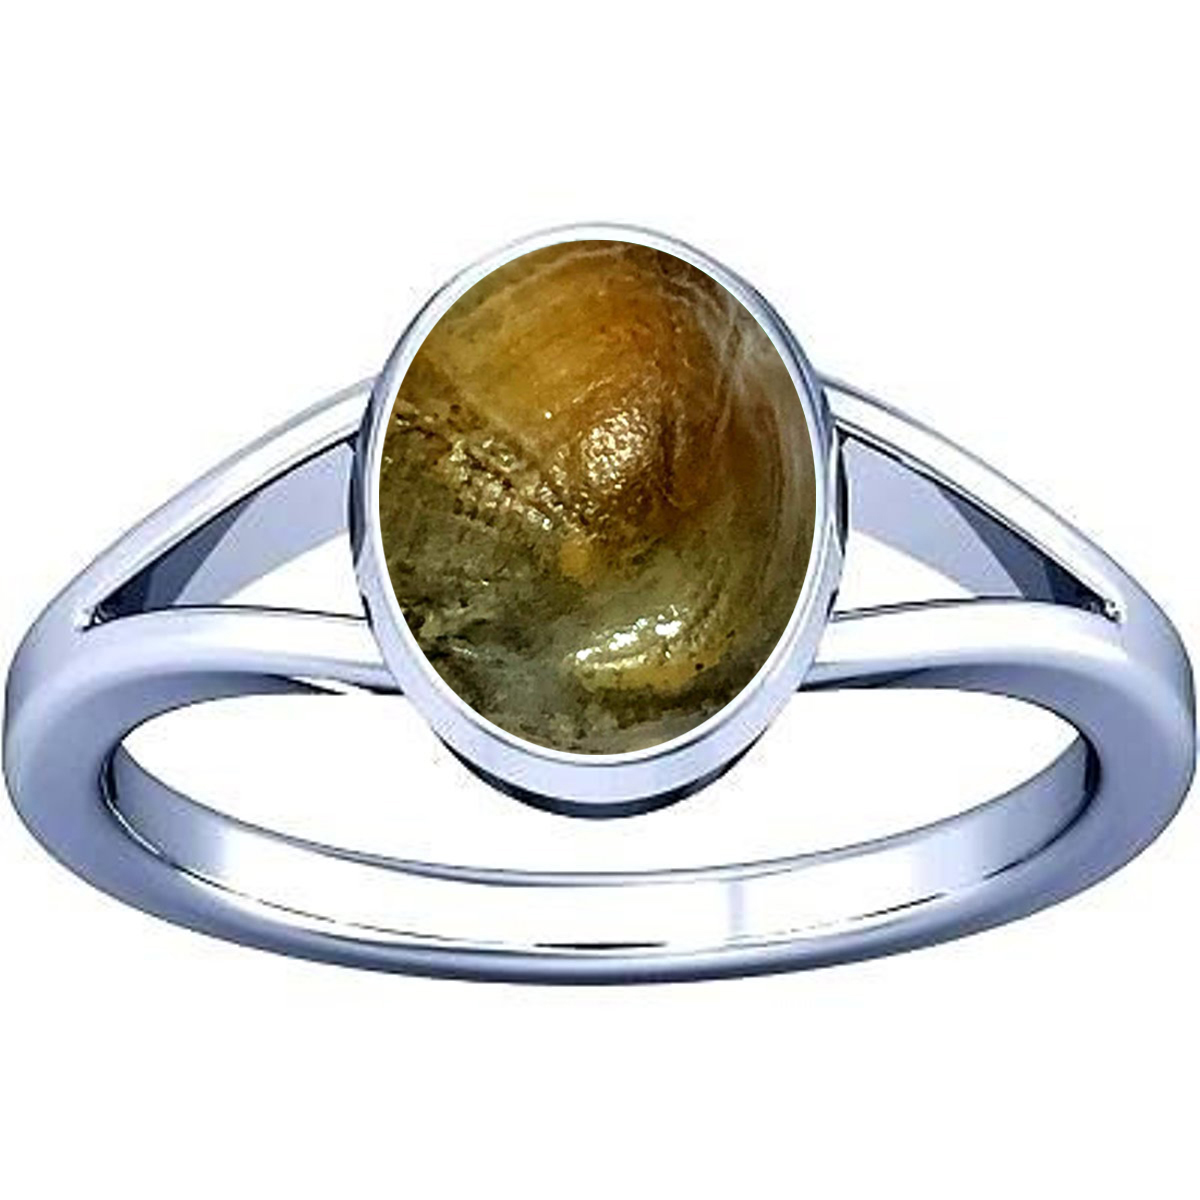 Diamond Ring On Groomed Lady Finger Stock Photo 1868499352 | Shutterstock